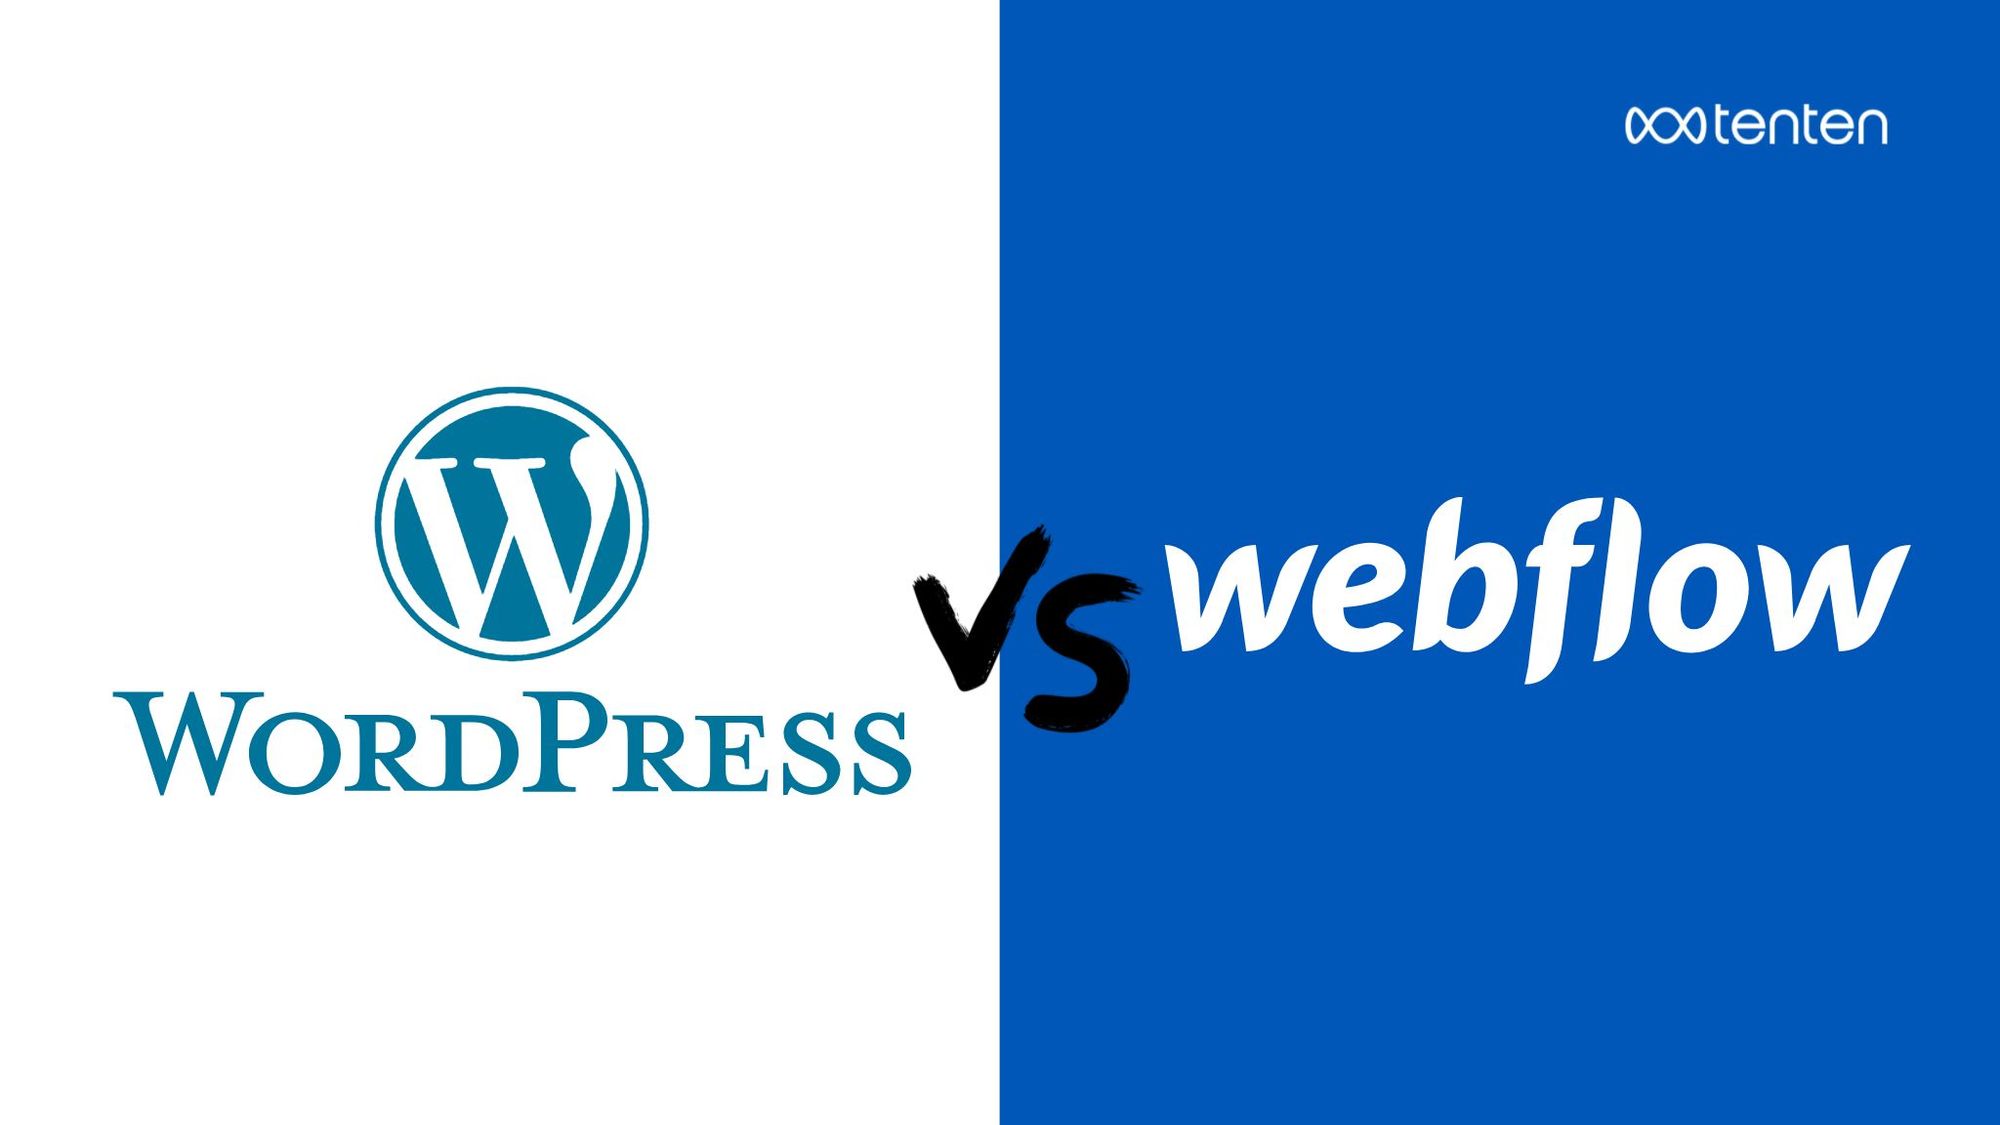 Webflow vs WordPress 都幾? 超詳解比較